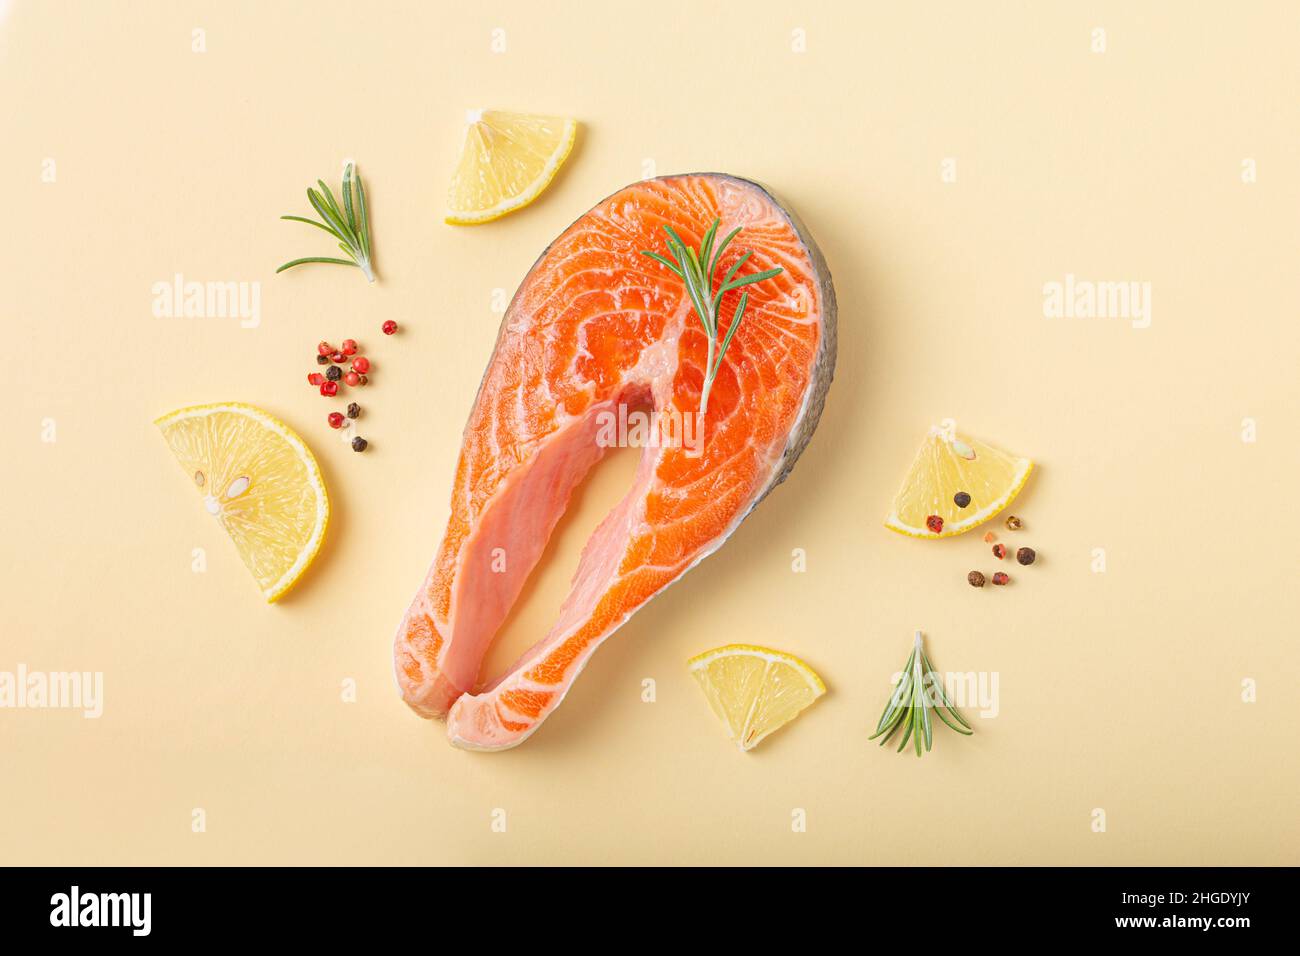 Steak de saumon frais cru vue de dessus sur fond beige pastel Banque D'Images